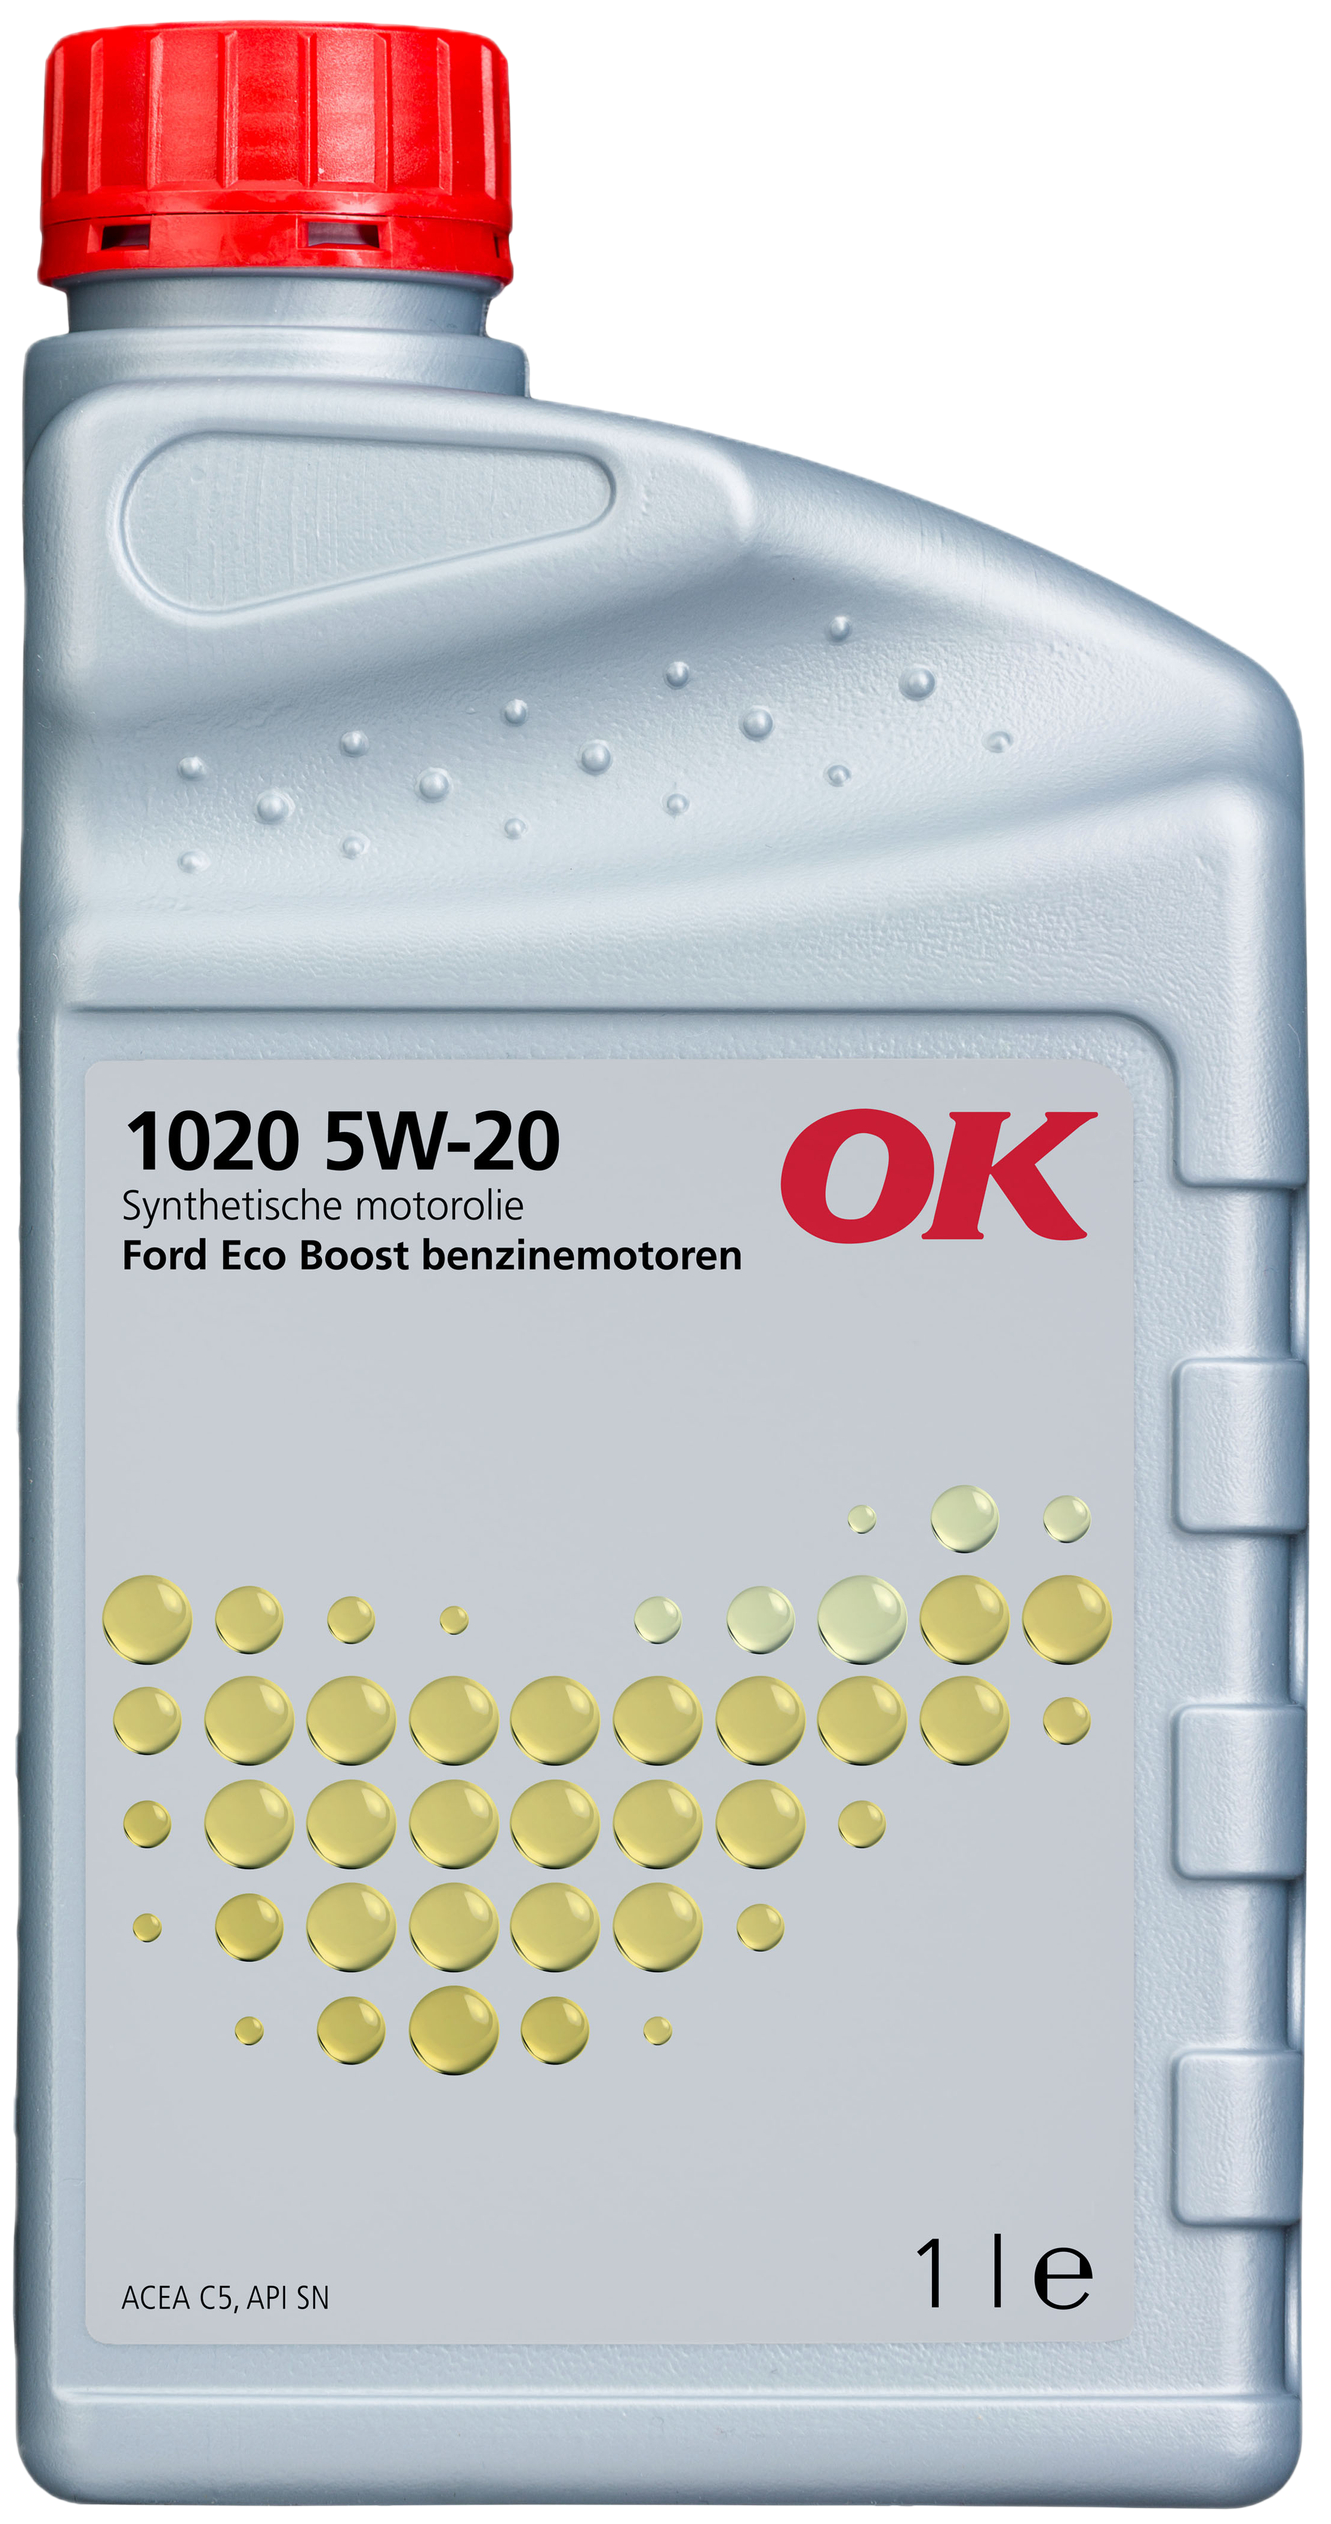 O2020-1 OK 1020 5W-20 is een moderne brandstofbesparende motorolie, speciaal ontwikkeld voor gebruik in de nieuwe Ford EcoBoost benzinemotoren.